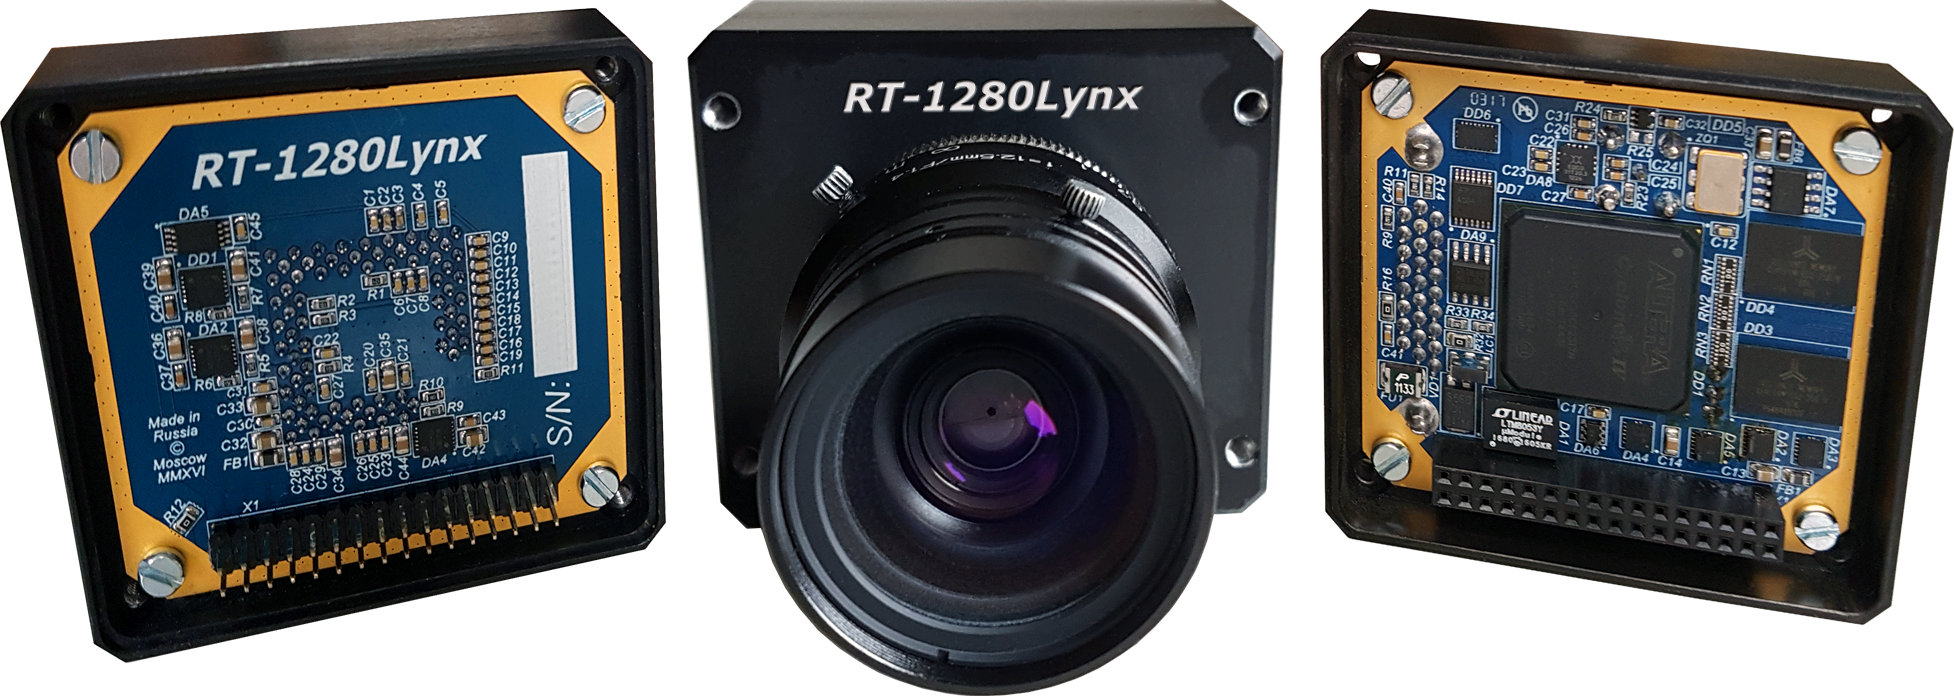 Программируемая цифровая камера RT-1280Lynx для наблюдения при низкой освещённости